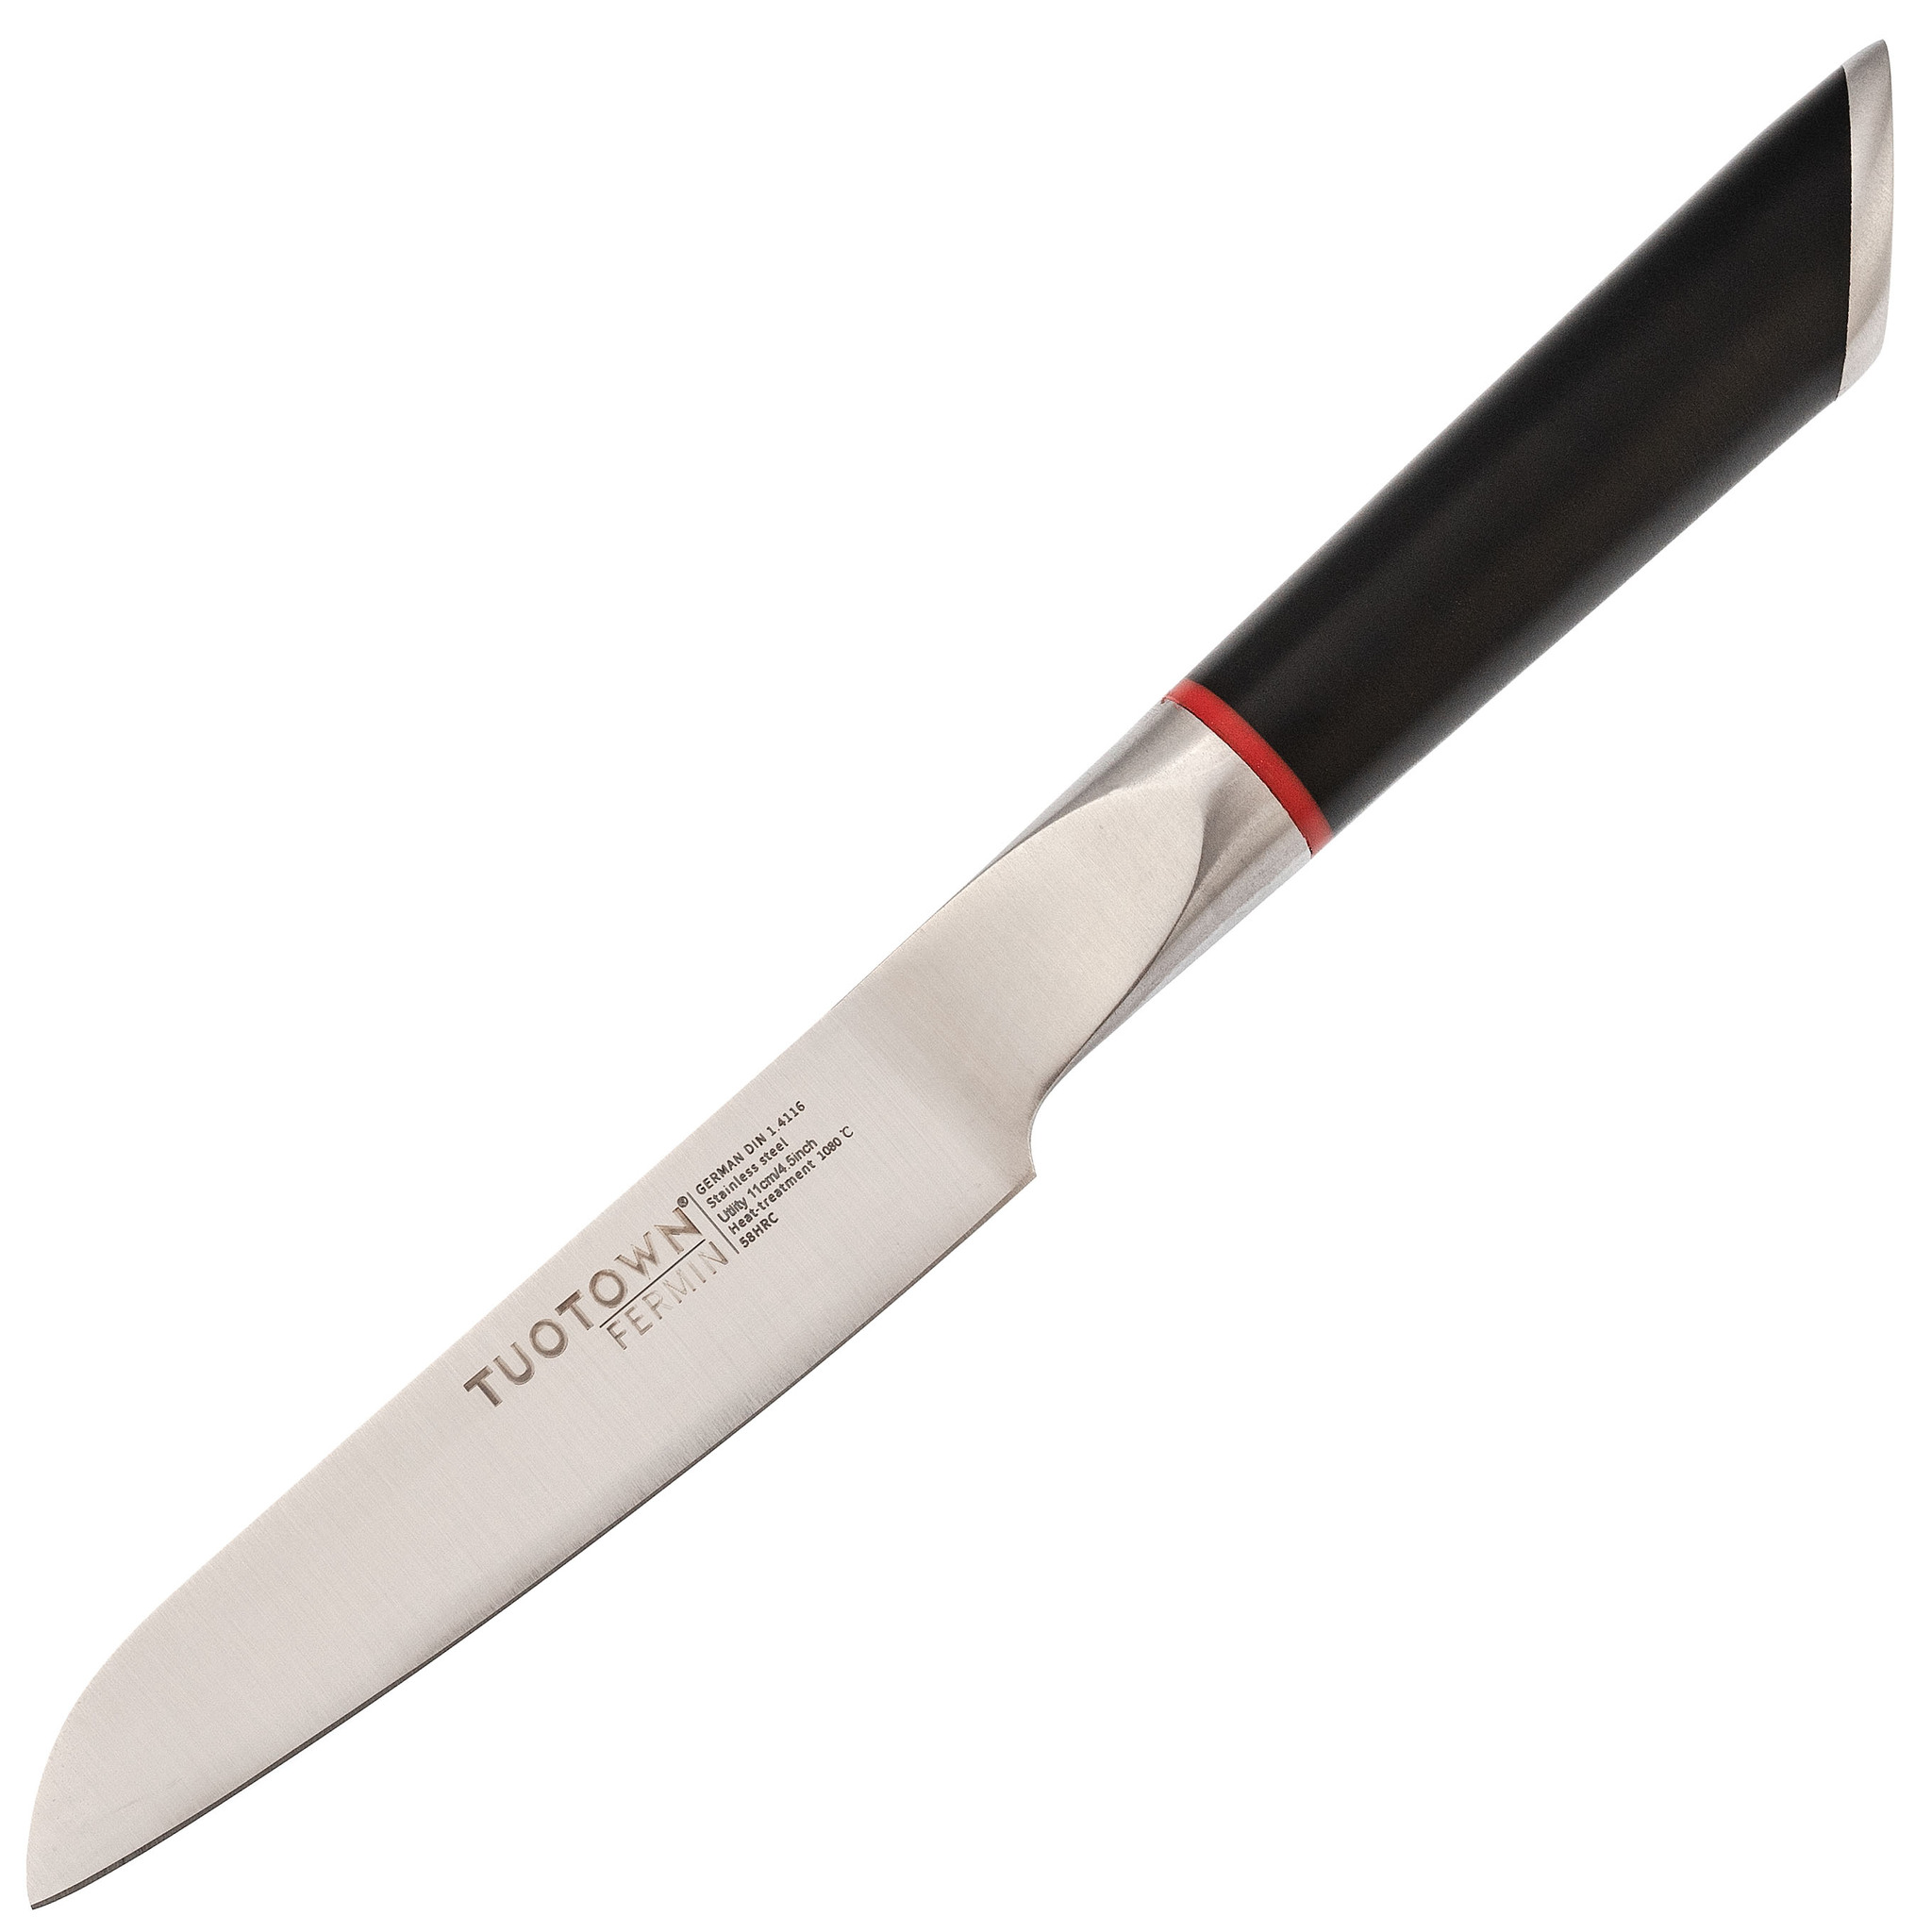 Кухонный нож универсальный, Tuotown серия Fermin, сталь 1.4116, рукоять пластик кухонный секатор универсальный х60